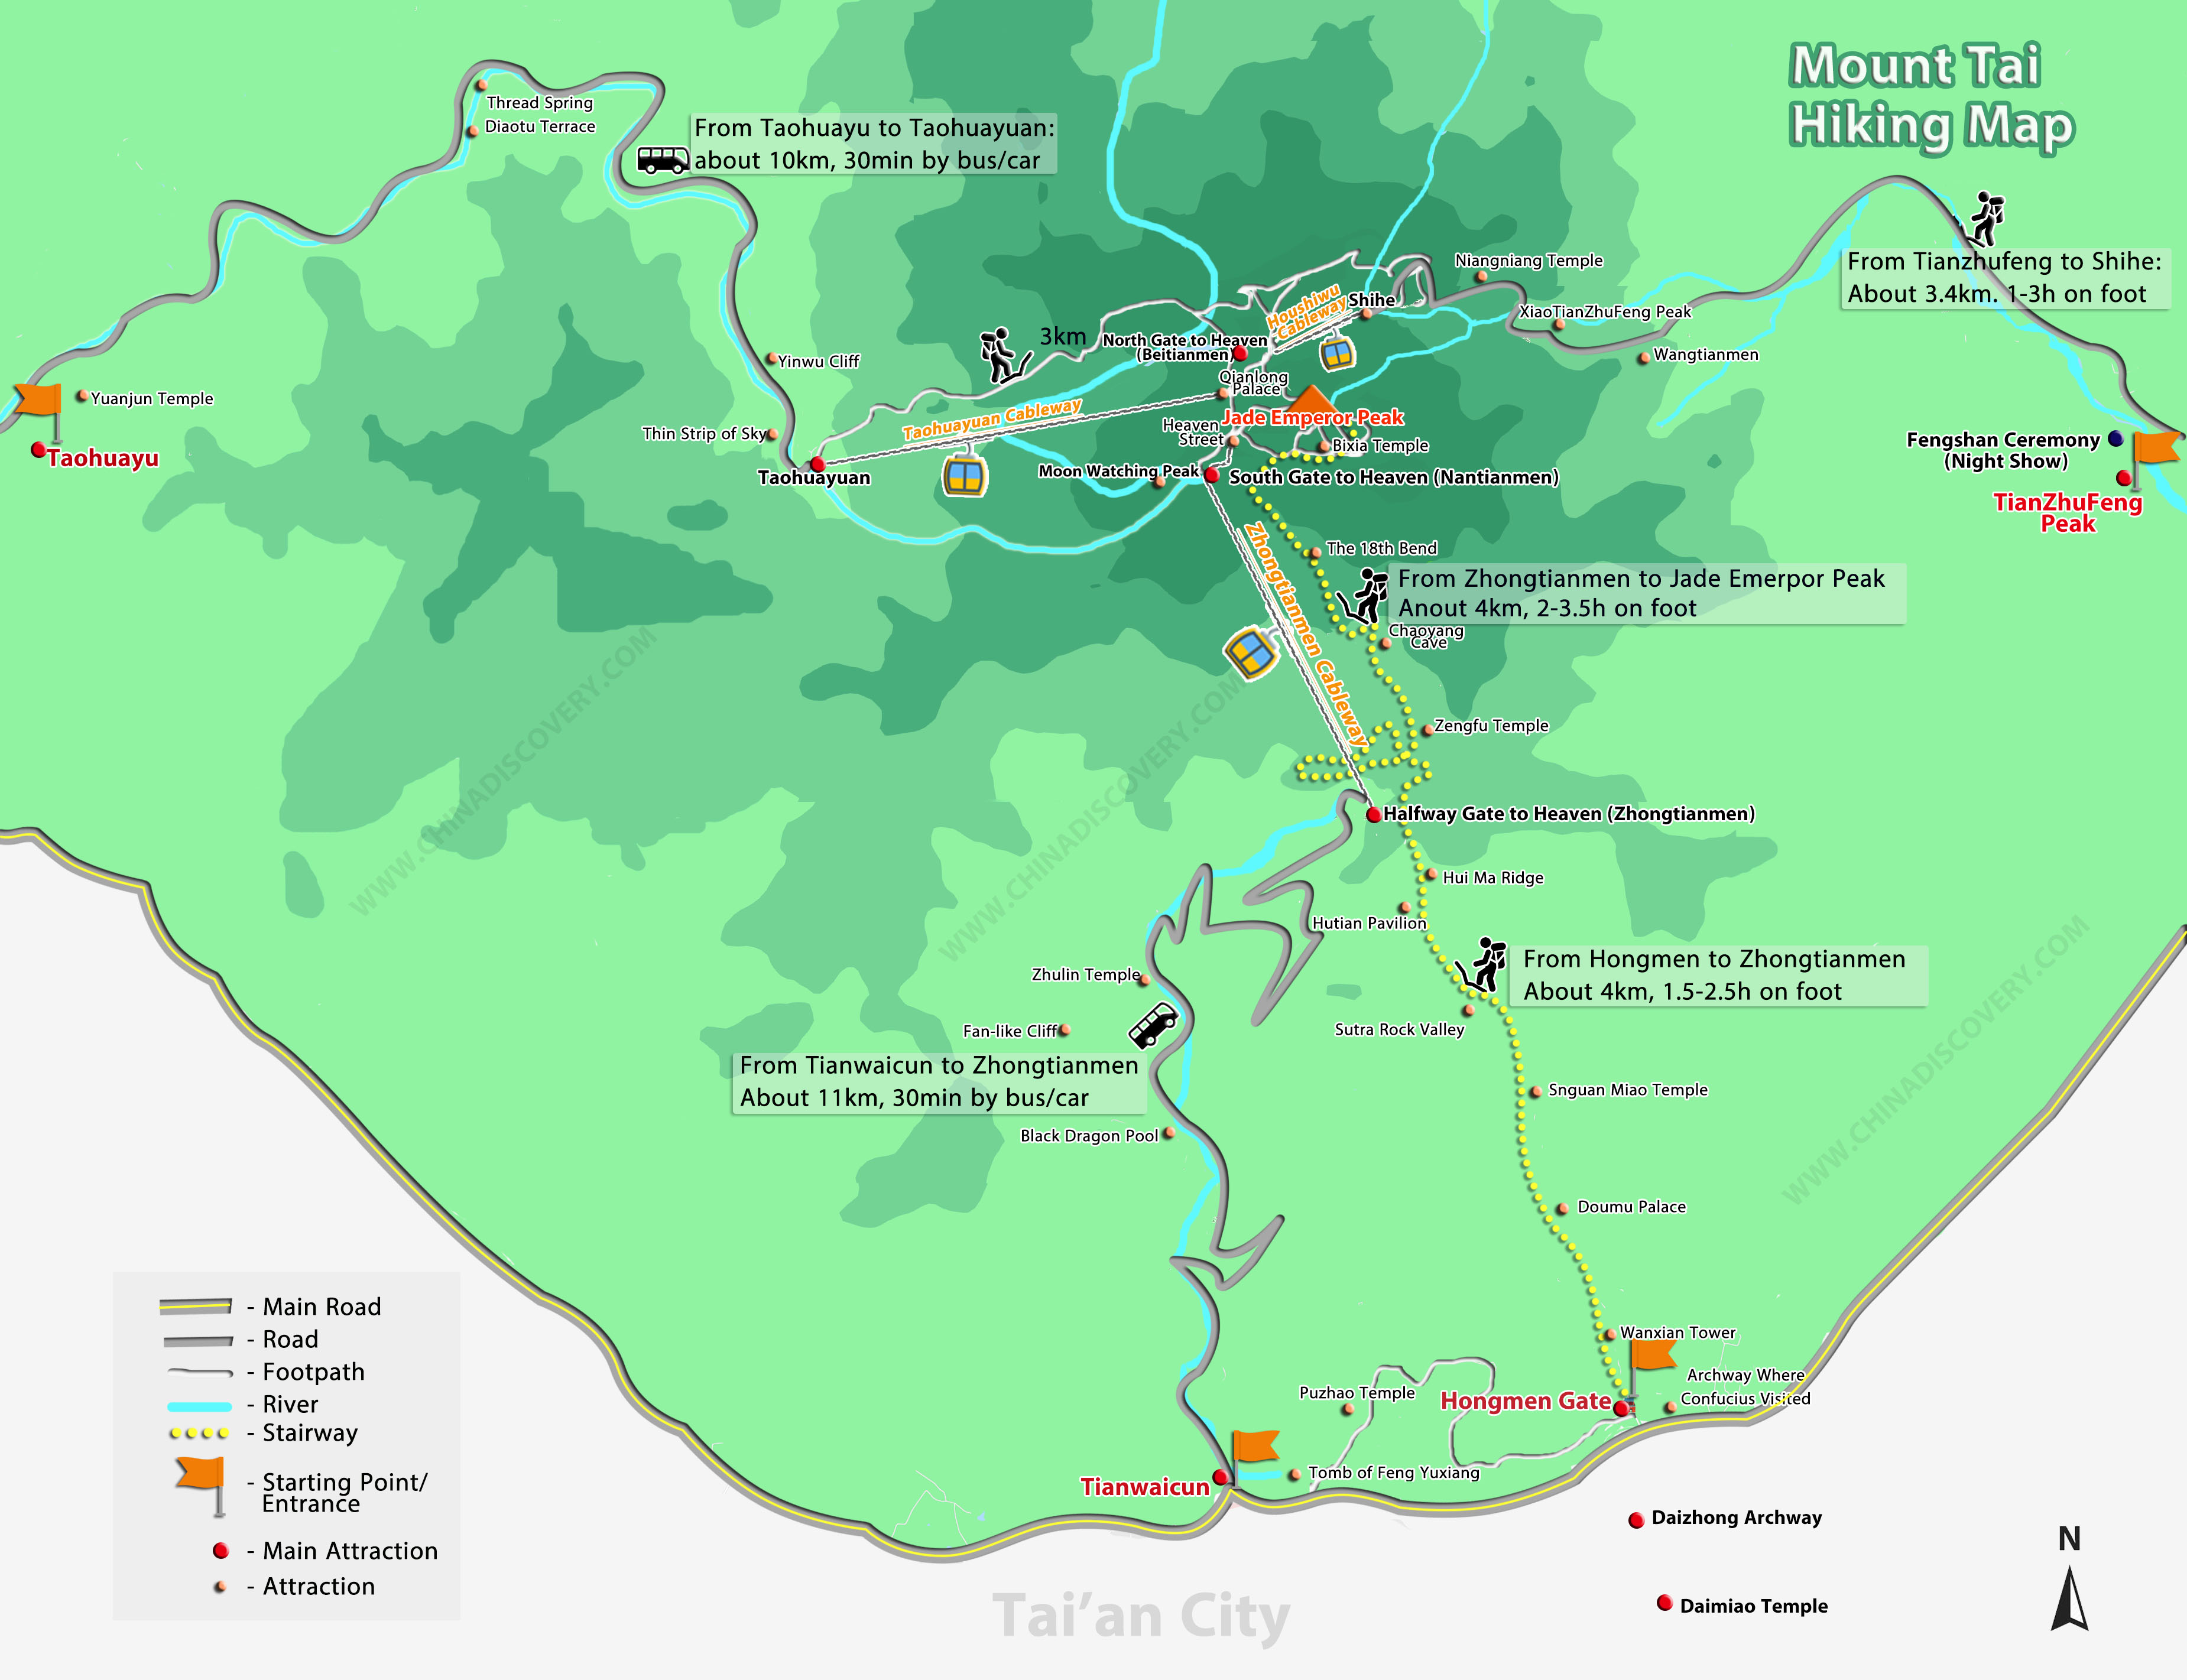 Mount Tai Hiking Map